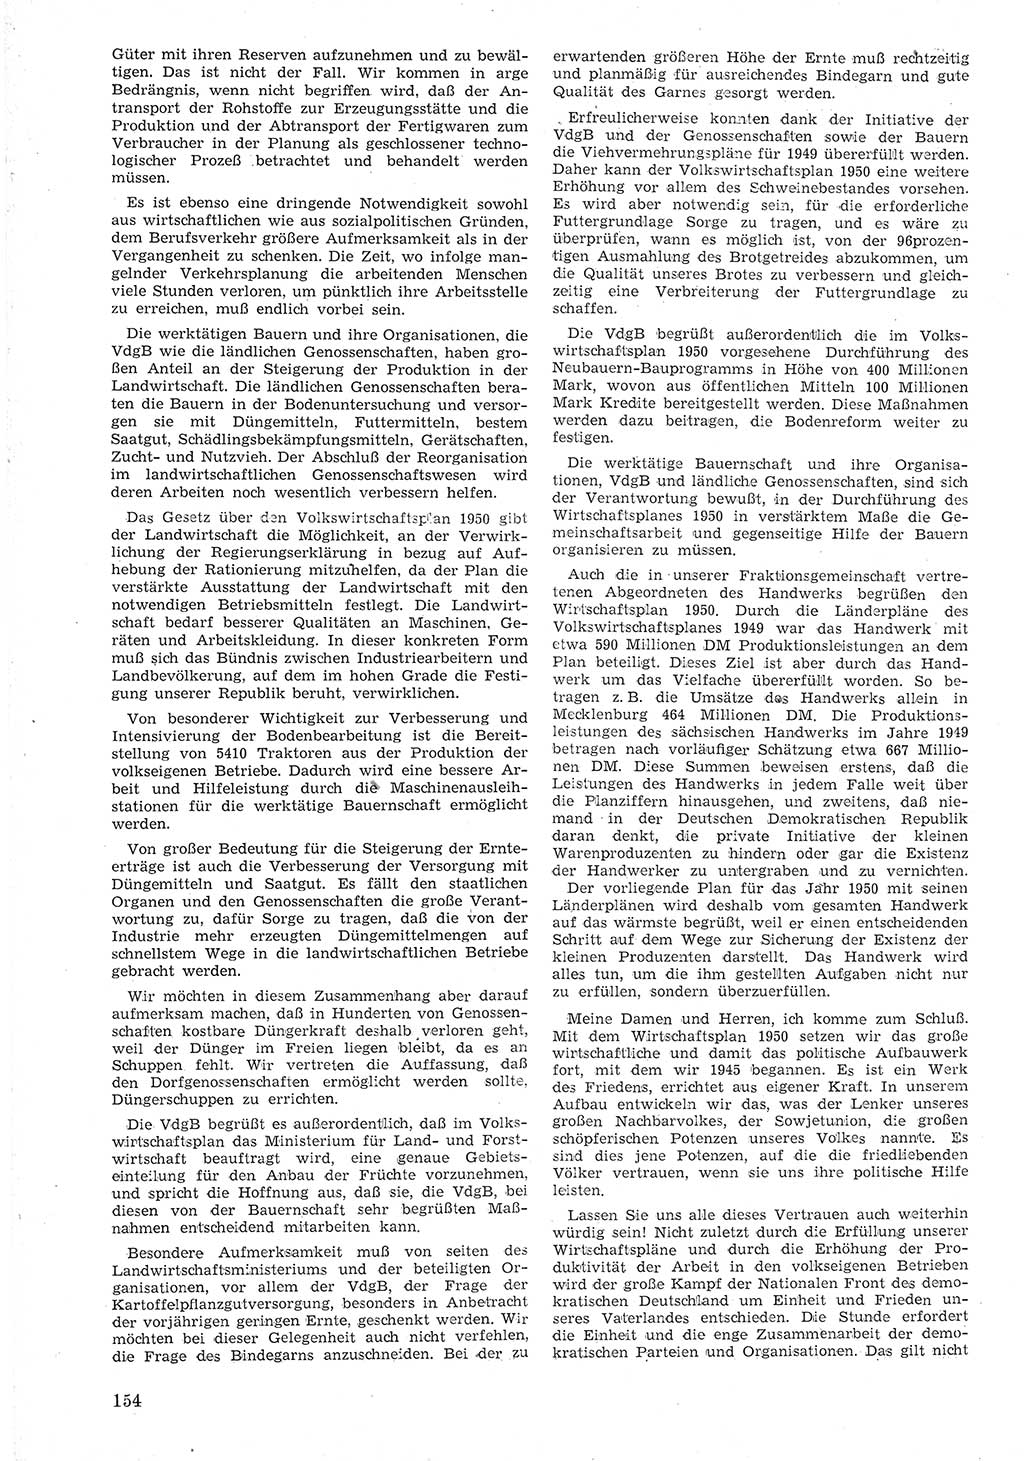 Provisorische Volkskammer (VK) der Deutschen Demokratischen Republik (DDR) 1949-1950, Dokument 166 (Prov. VK DDR 1949-1950, Dok. 166)